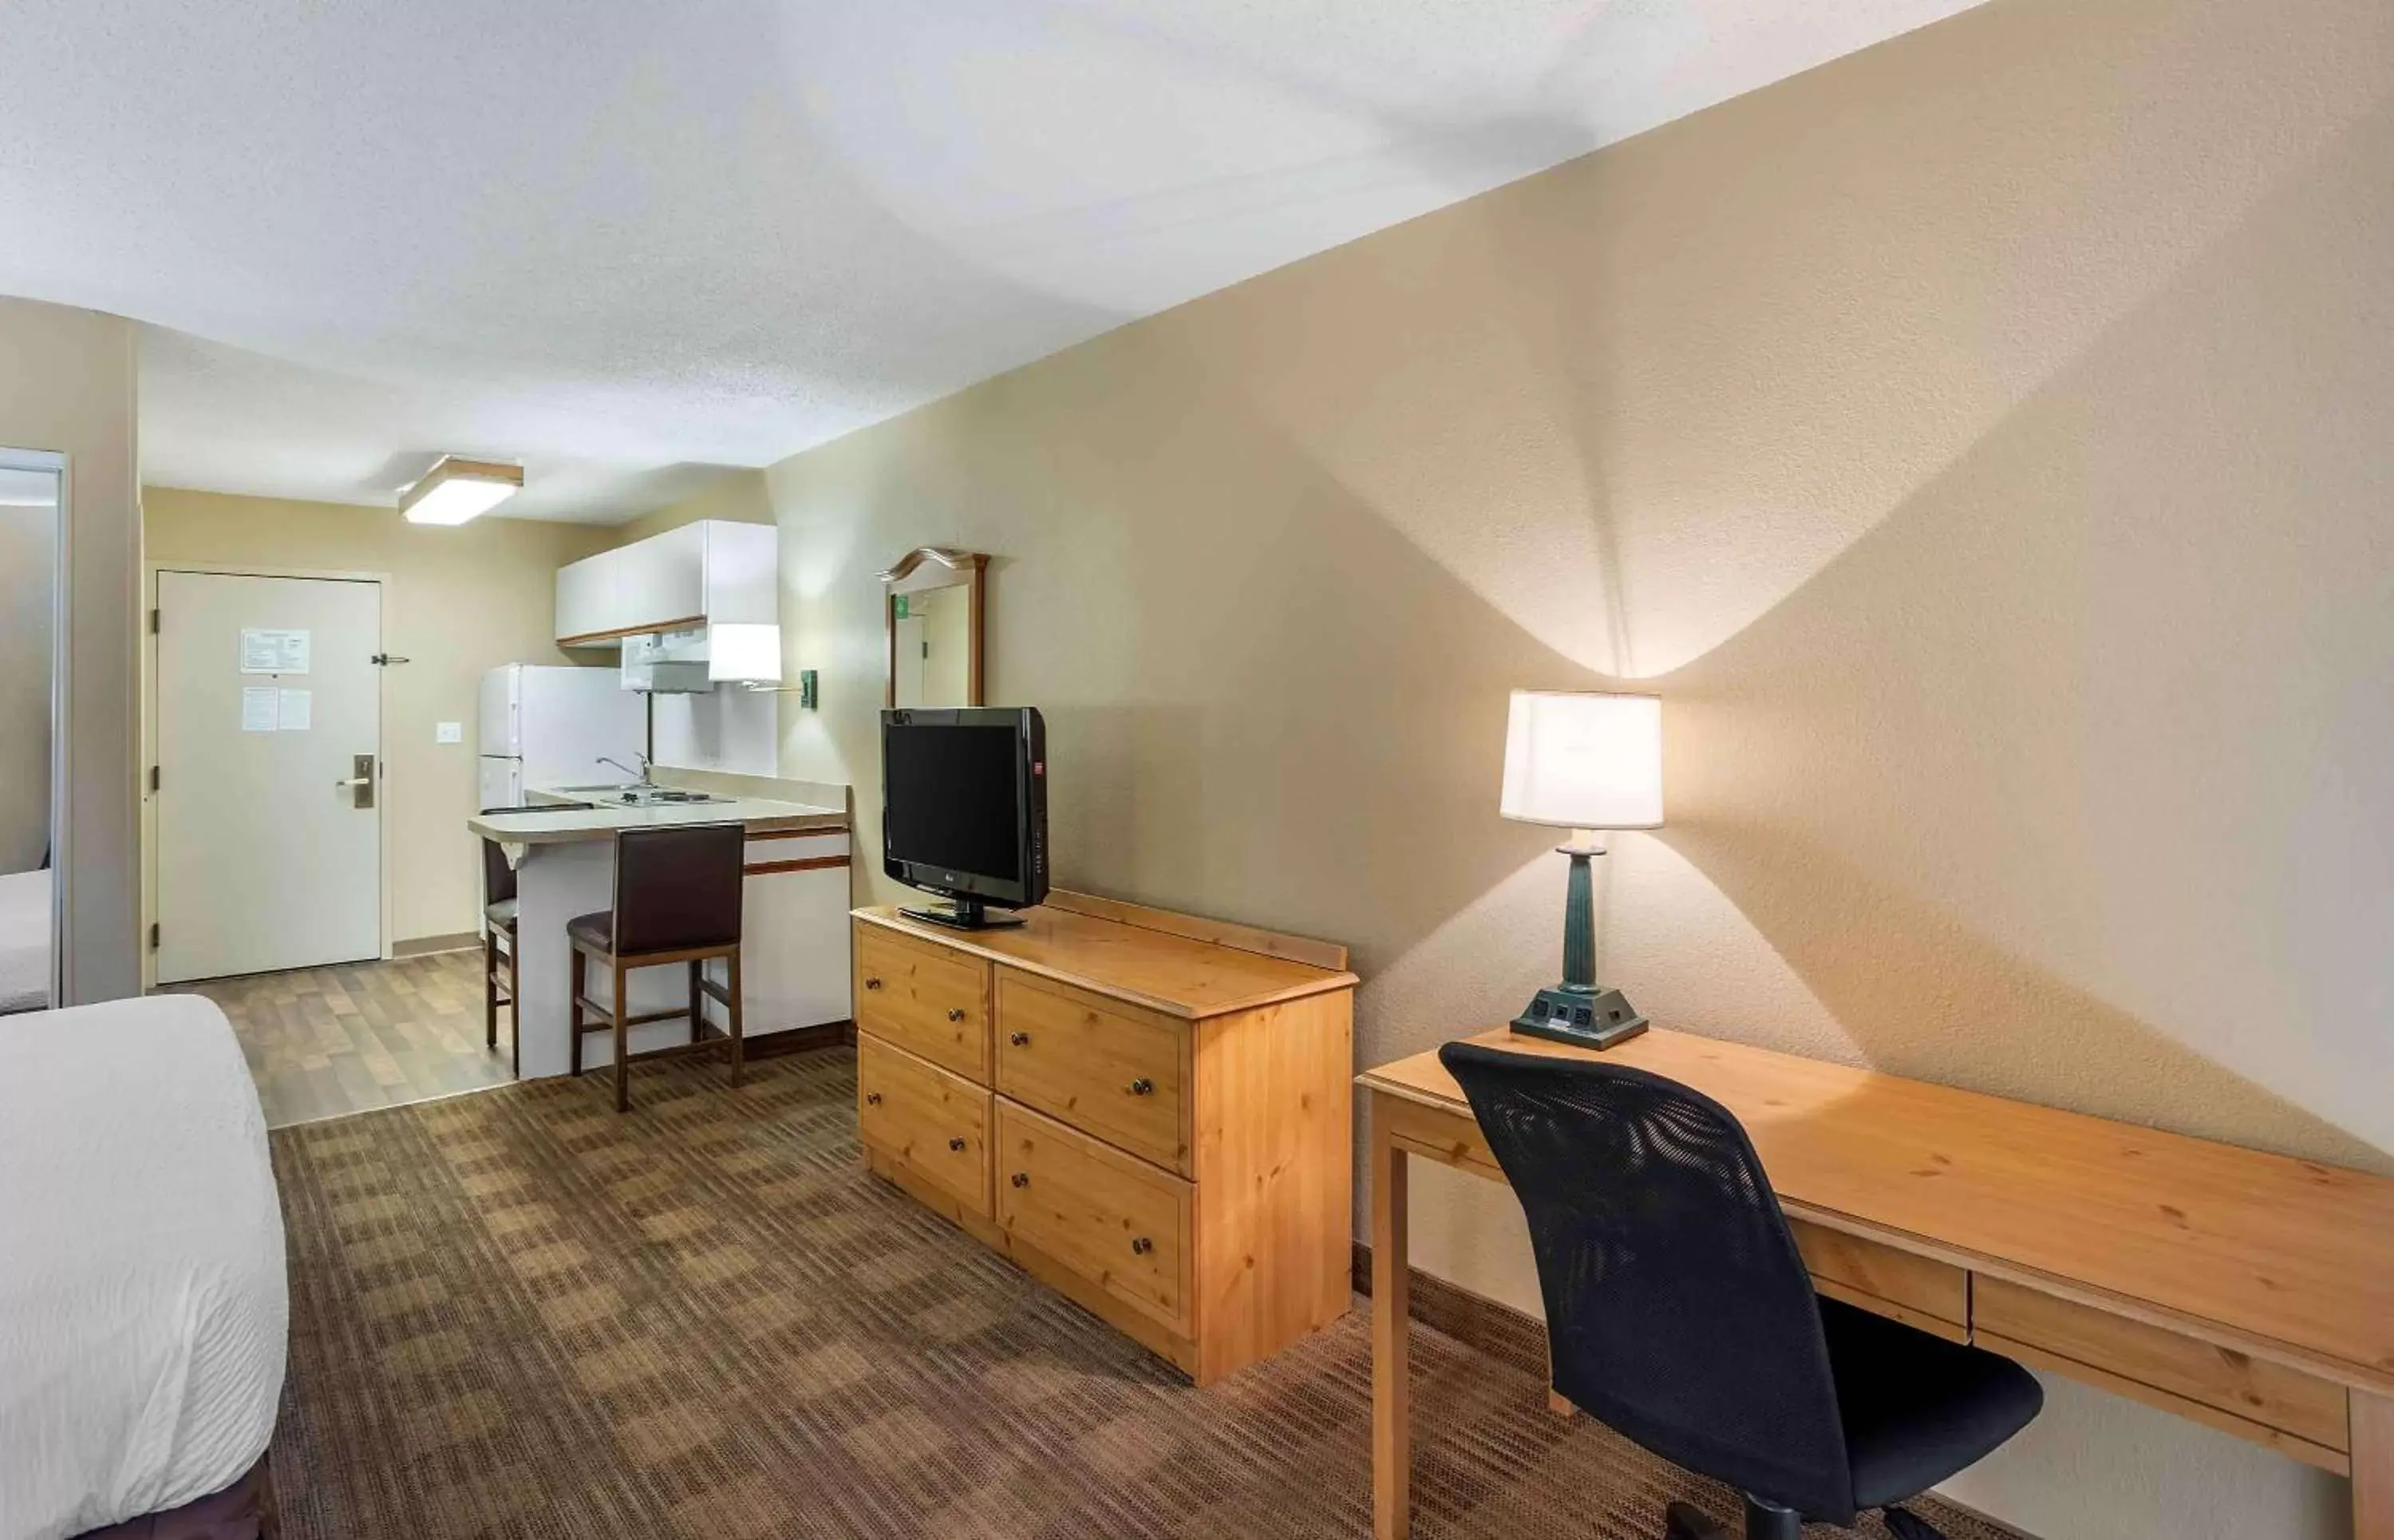 Bedroom, TV/Entertainment Center in Extended Stay America Suites - Philadelphia - Horsham - Dresher Rd